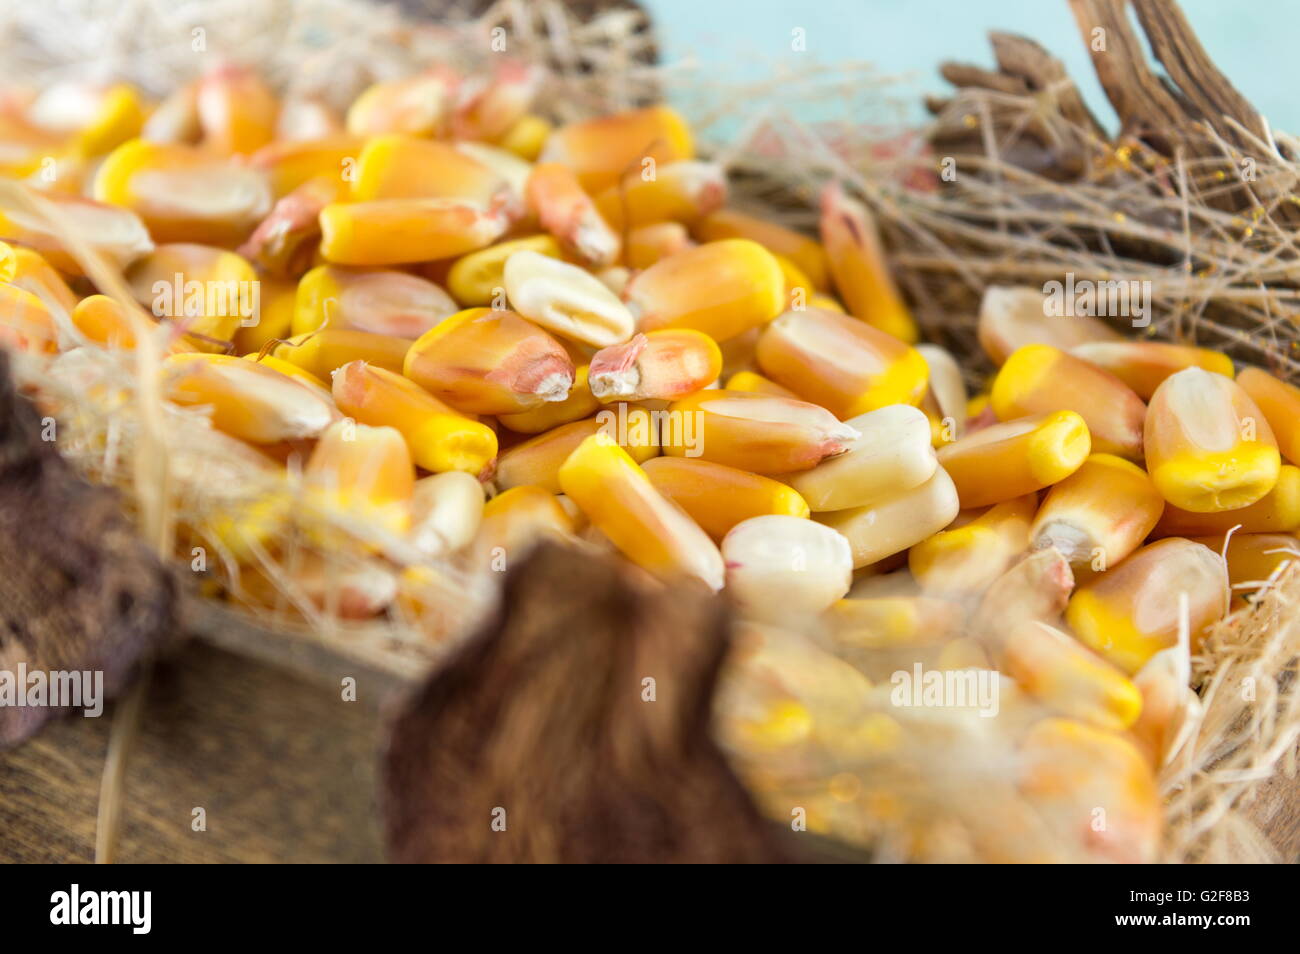 Le maïs cru dans un panier en bois close up Banque D'Images